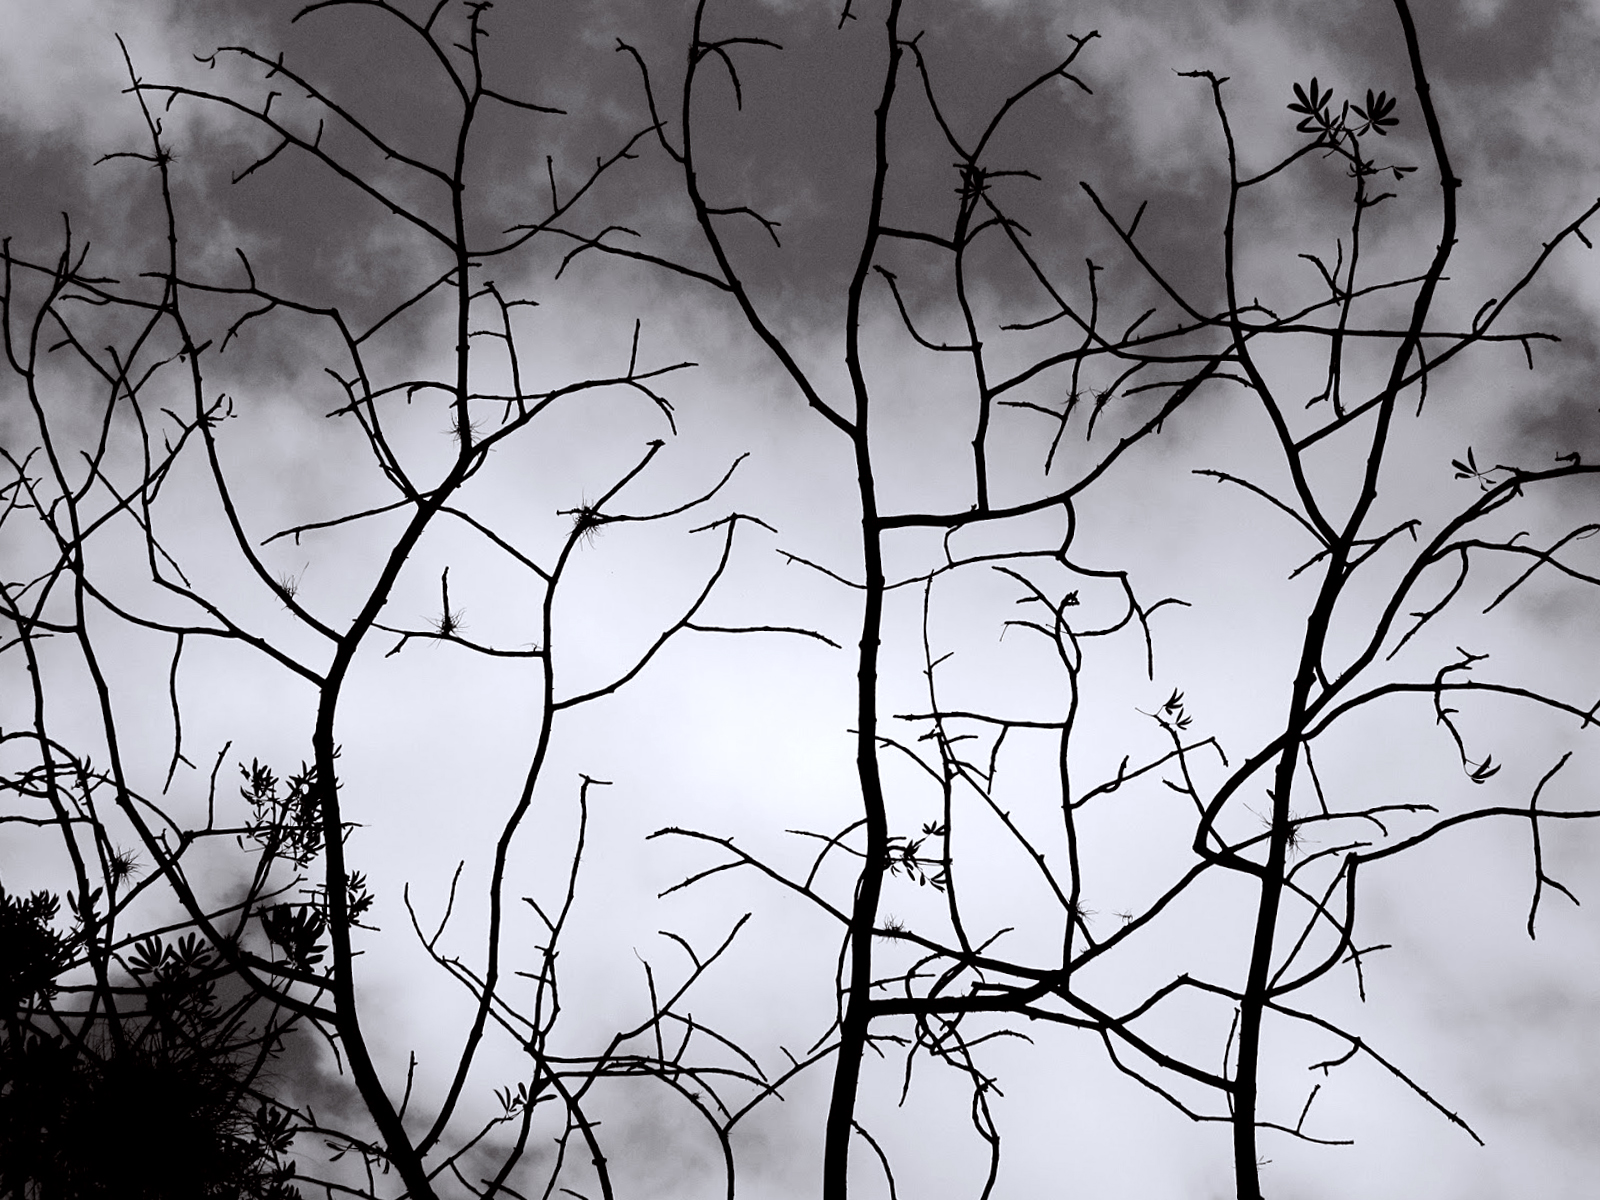 tapete siluet,baum,schwarz und weiß,monochrome fotografie,natur,zweig